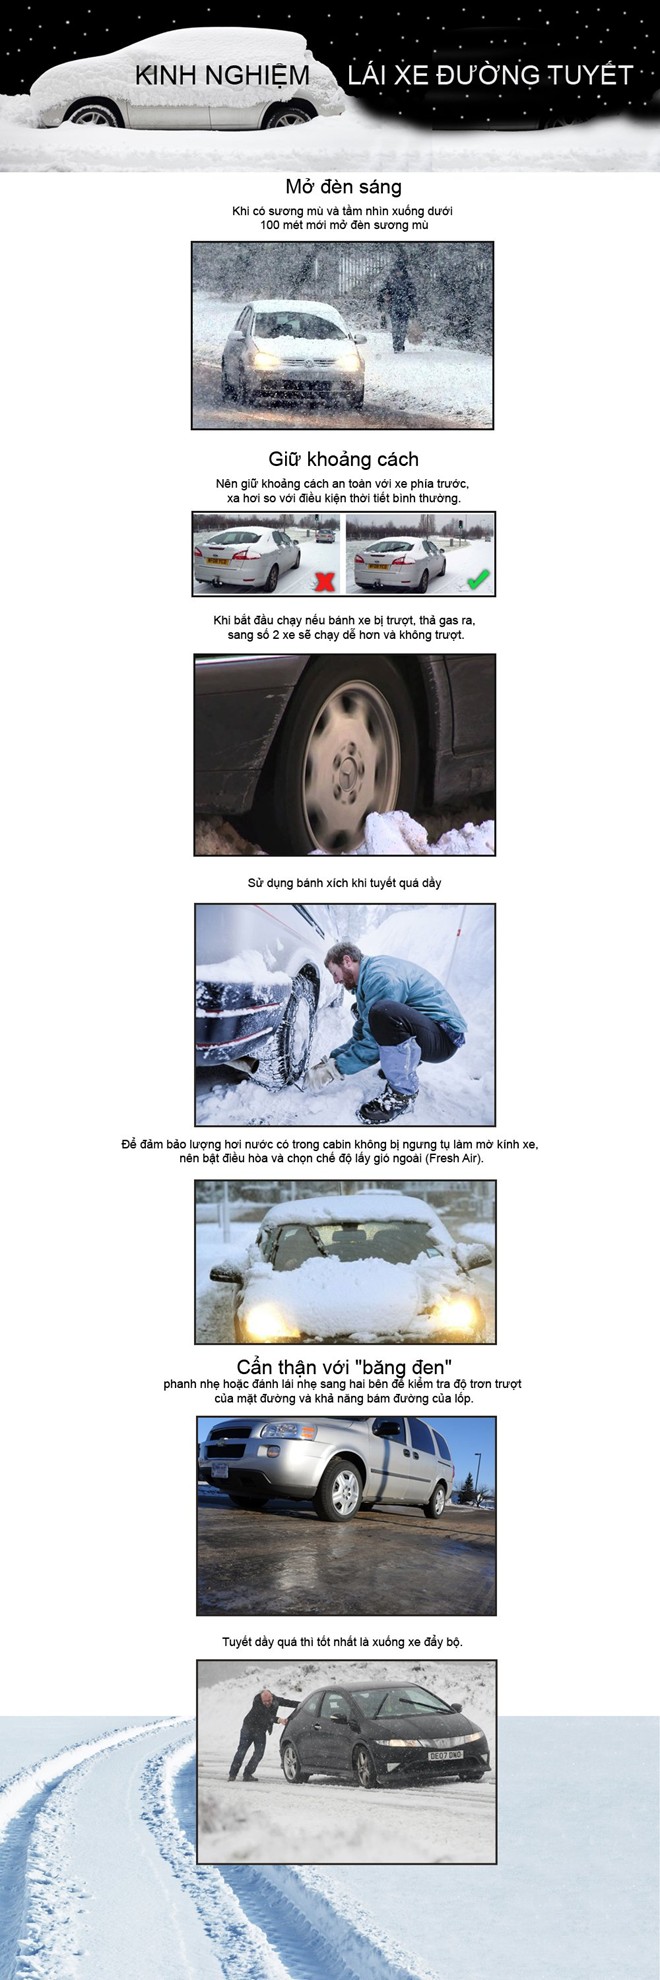 Kĩ năng lái xe an toàn trên đường băng tuyết